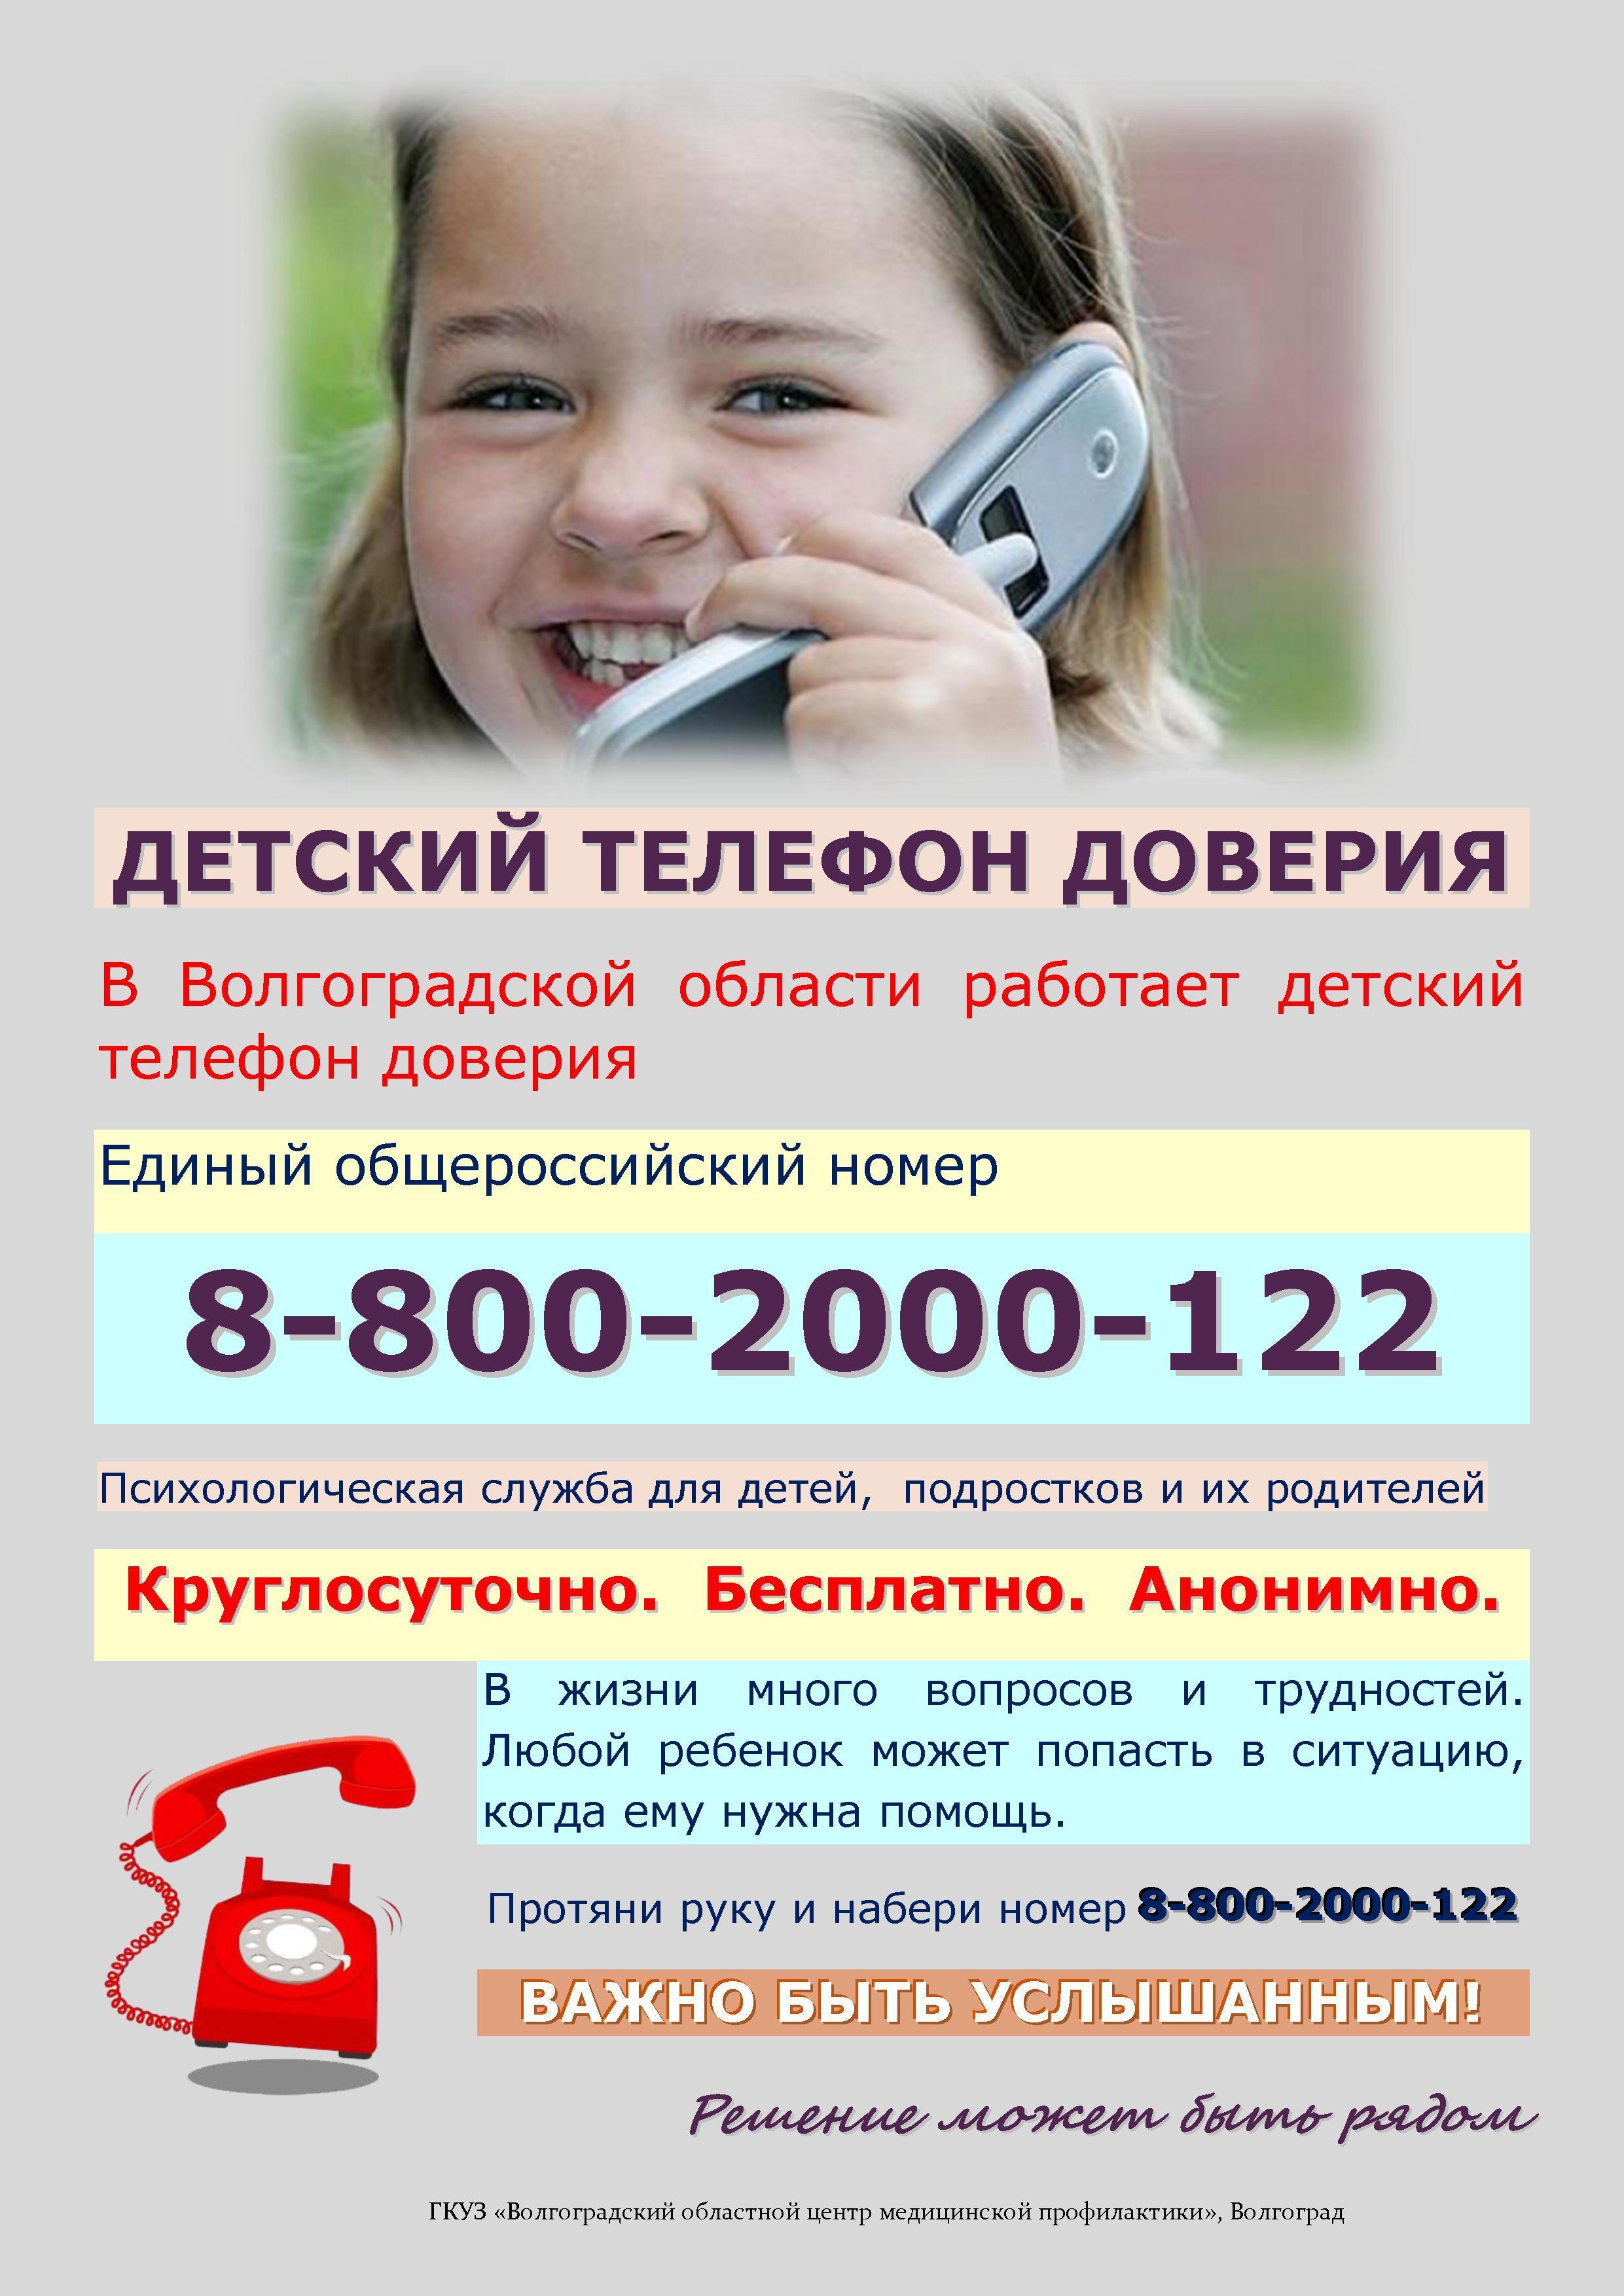 Помощь доверия детям. Телефон доверия. Детский телефон доверия. Телефон доверия для детей подростков и их родителей. Номер телефона доверия для детей.